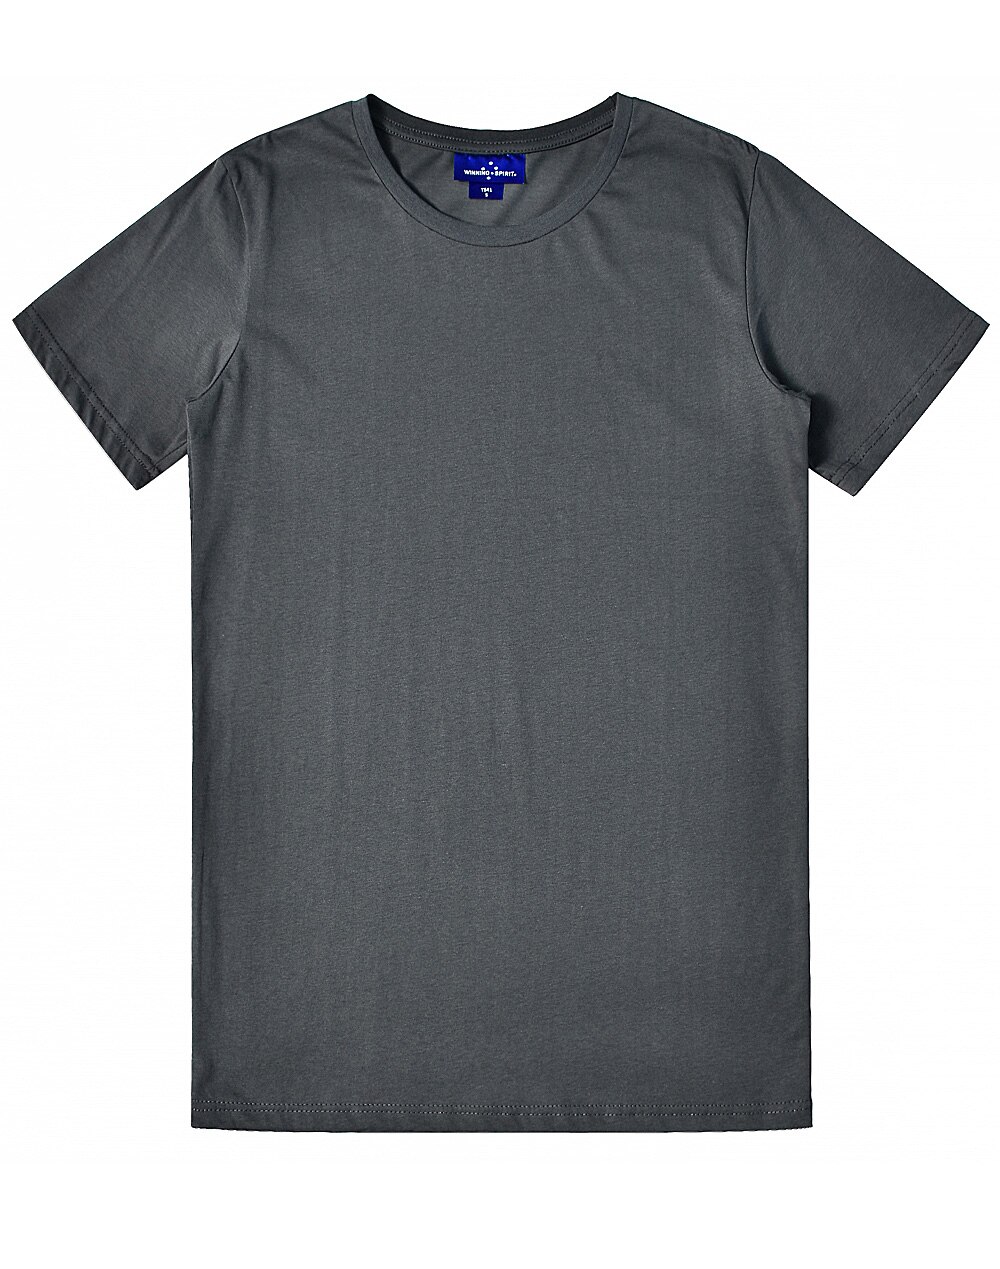 Custom Printed Premium T-Shirts Men's (Black) Cotton Online in Perth Australia